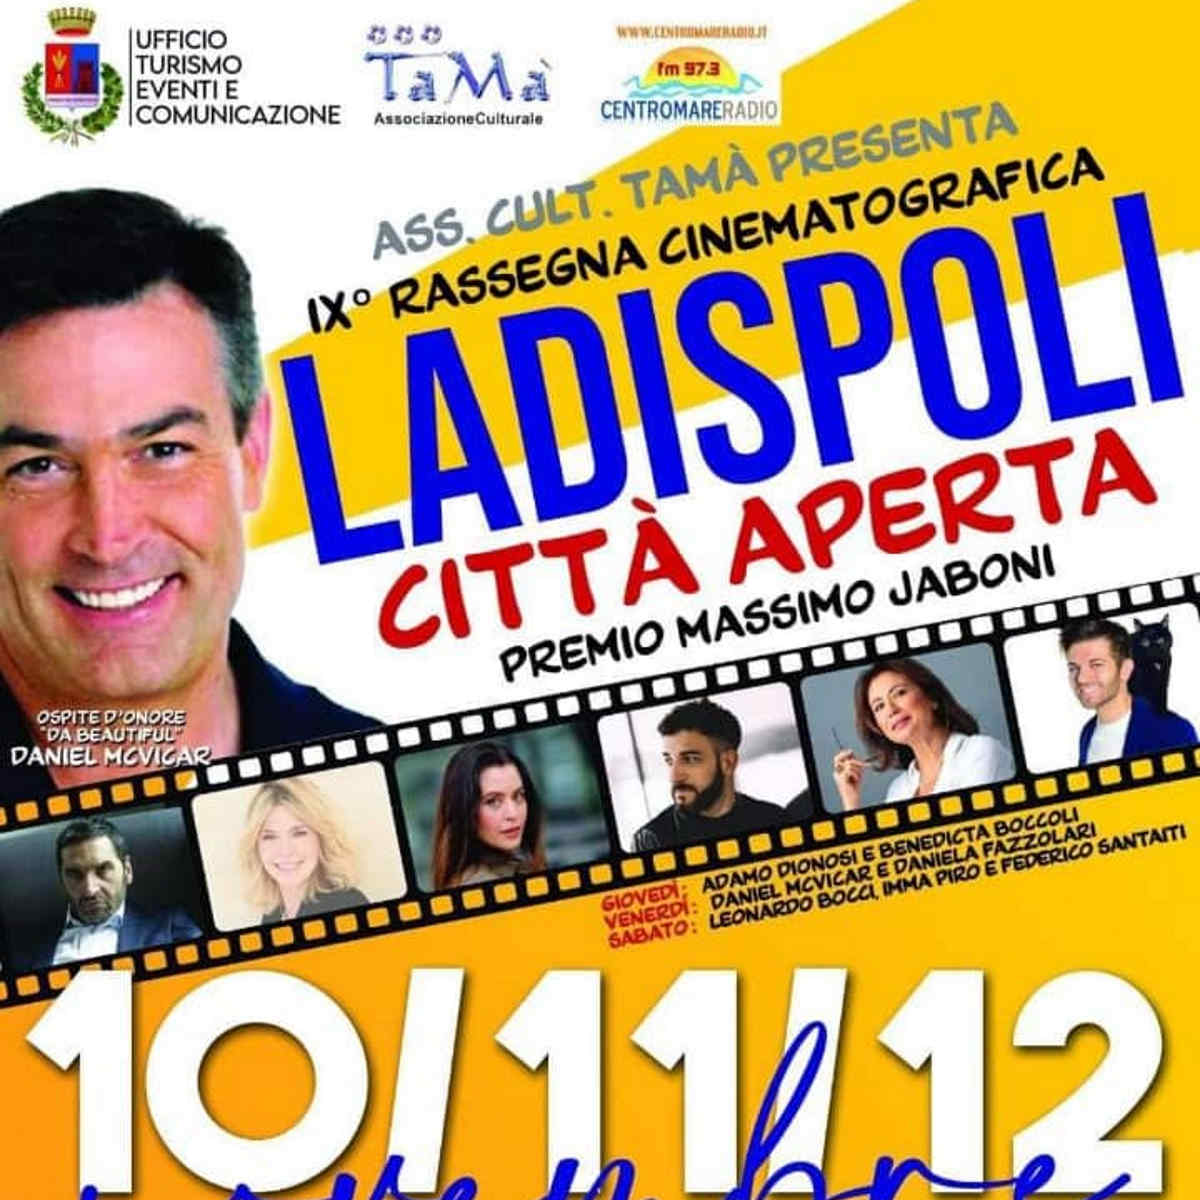 Al via la nona edizione della rassegna cinematografica “Ladispoli Città Aperta” Premio Massimo Jaboni in collaborazione con il comune di Ladispoli